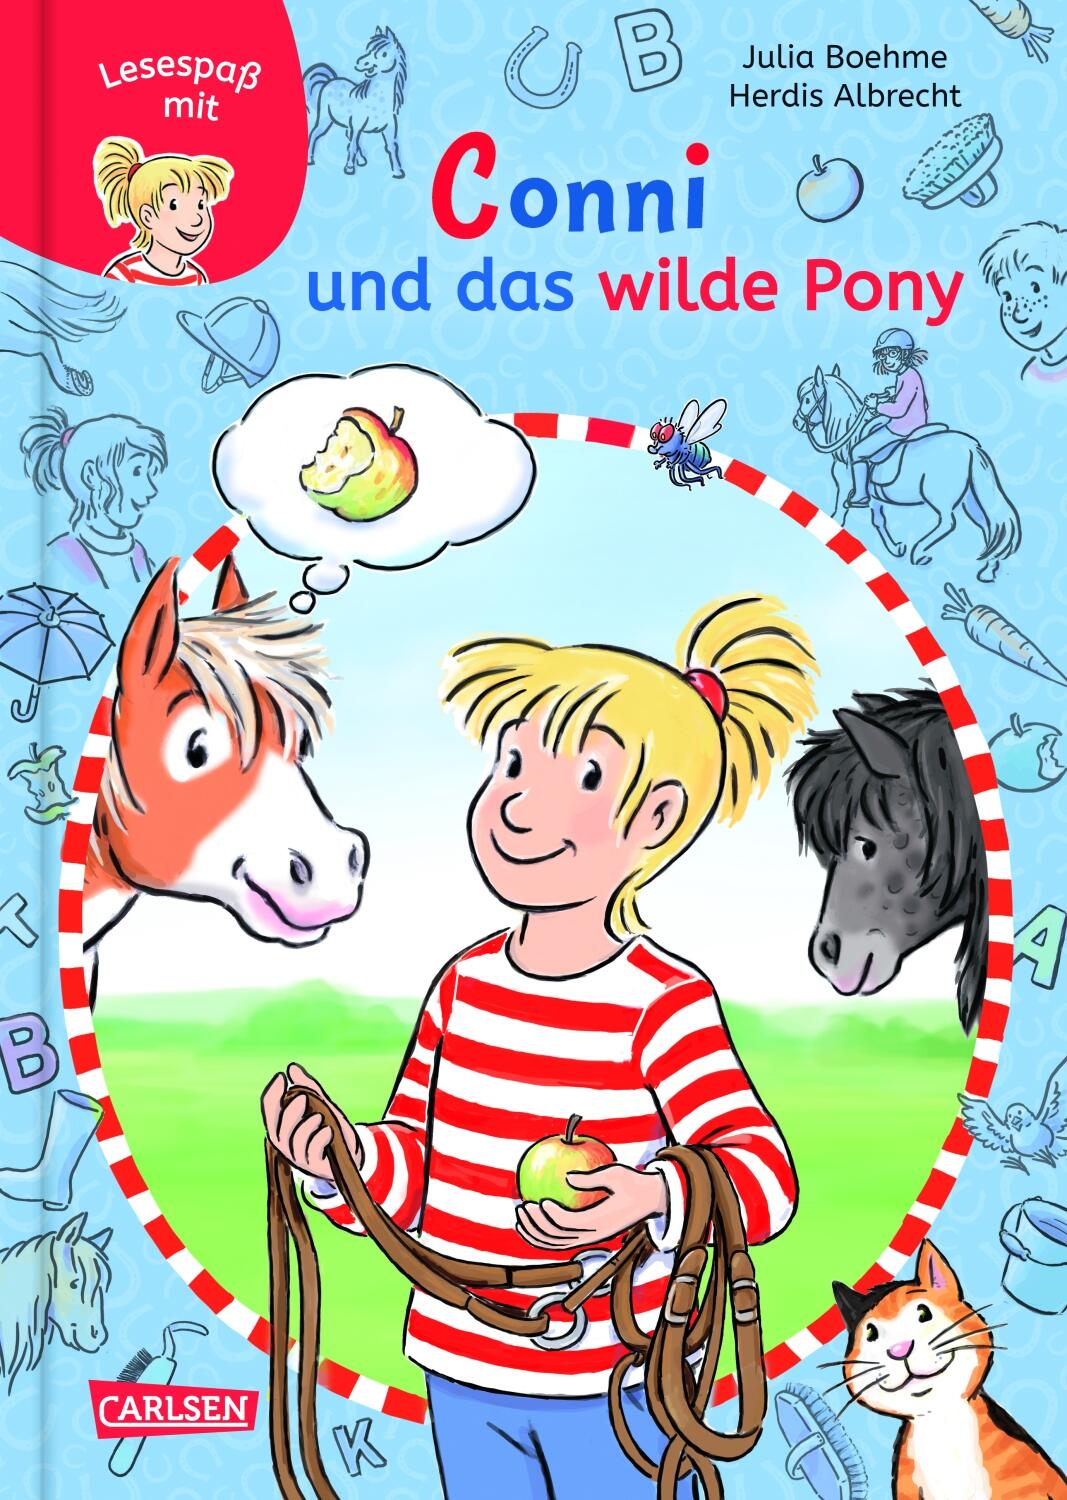 Lesespaß mit Conni 2: Conni und das wilde Pony